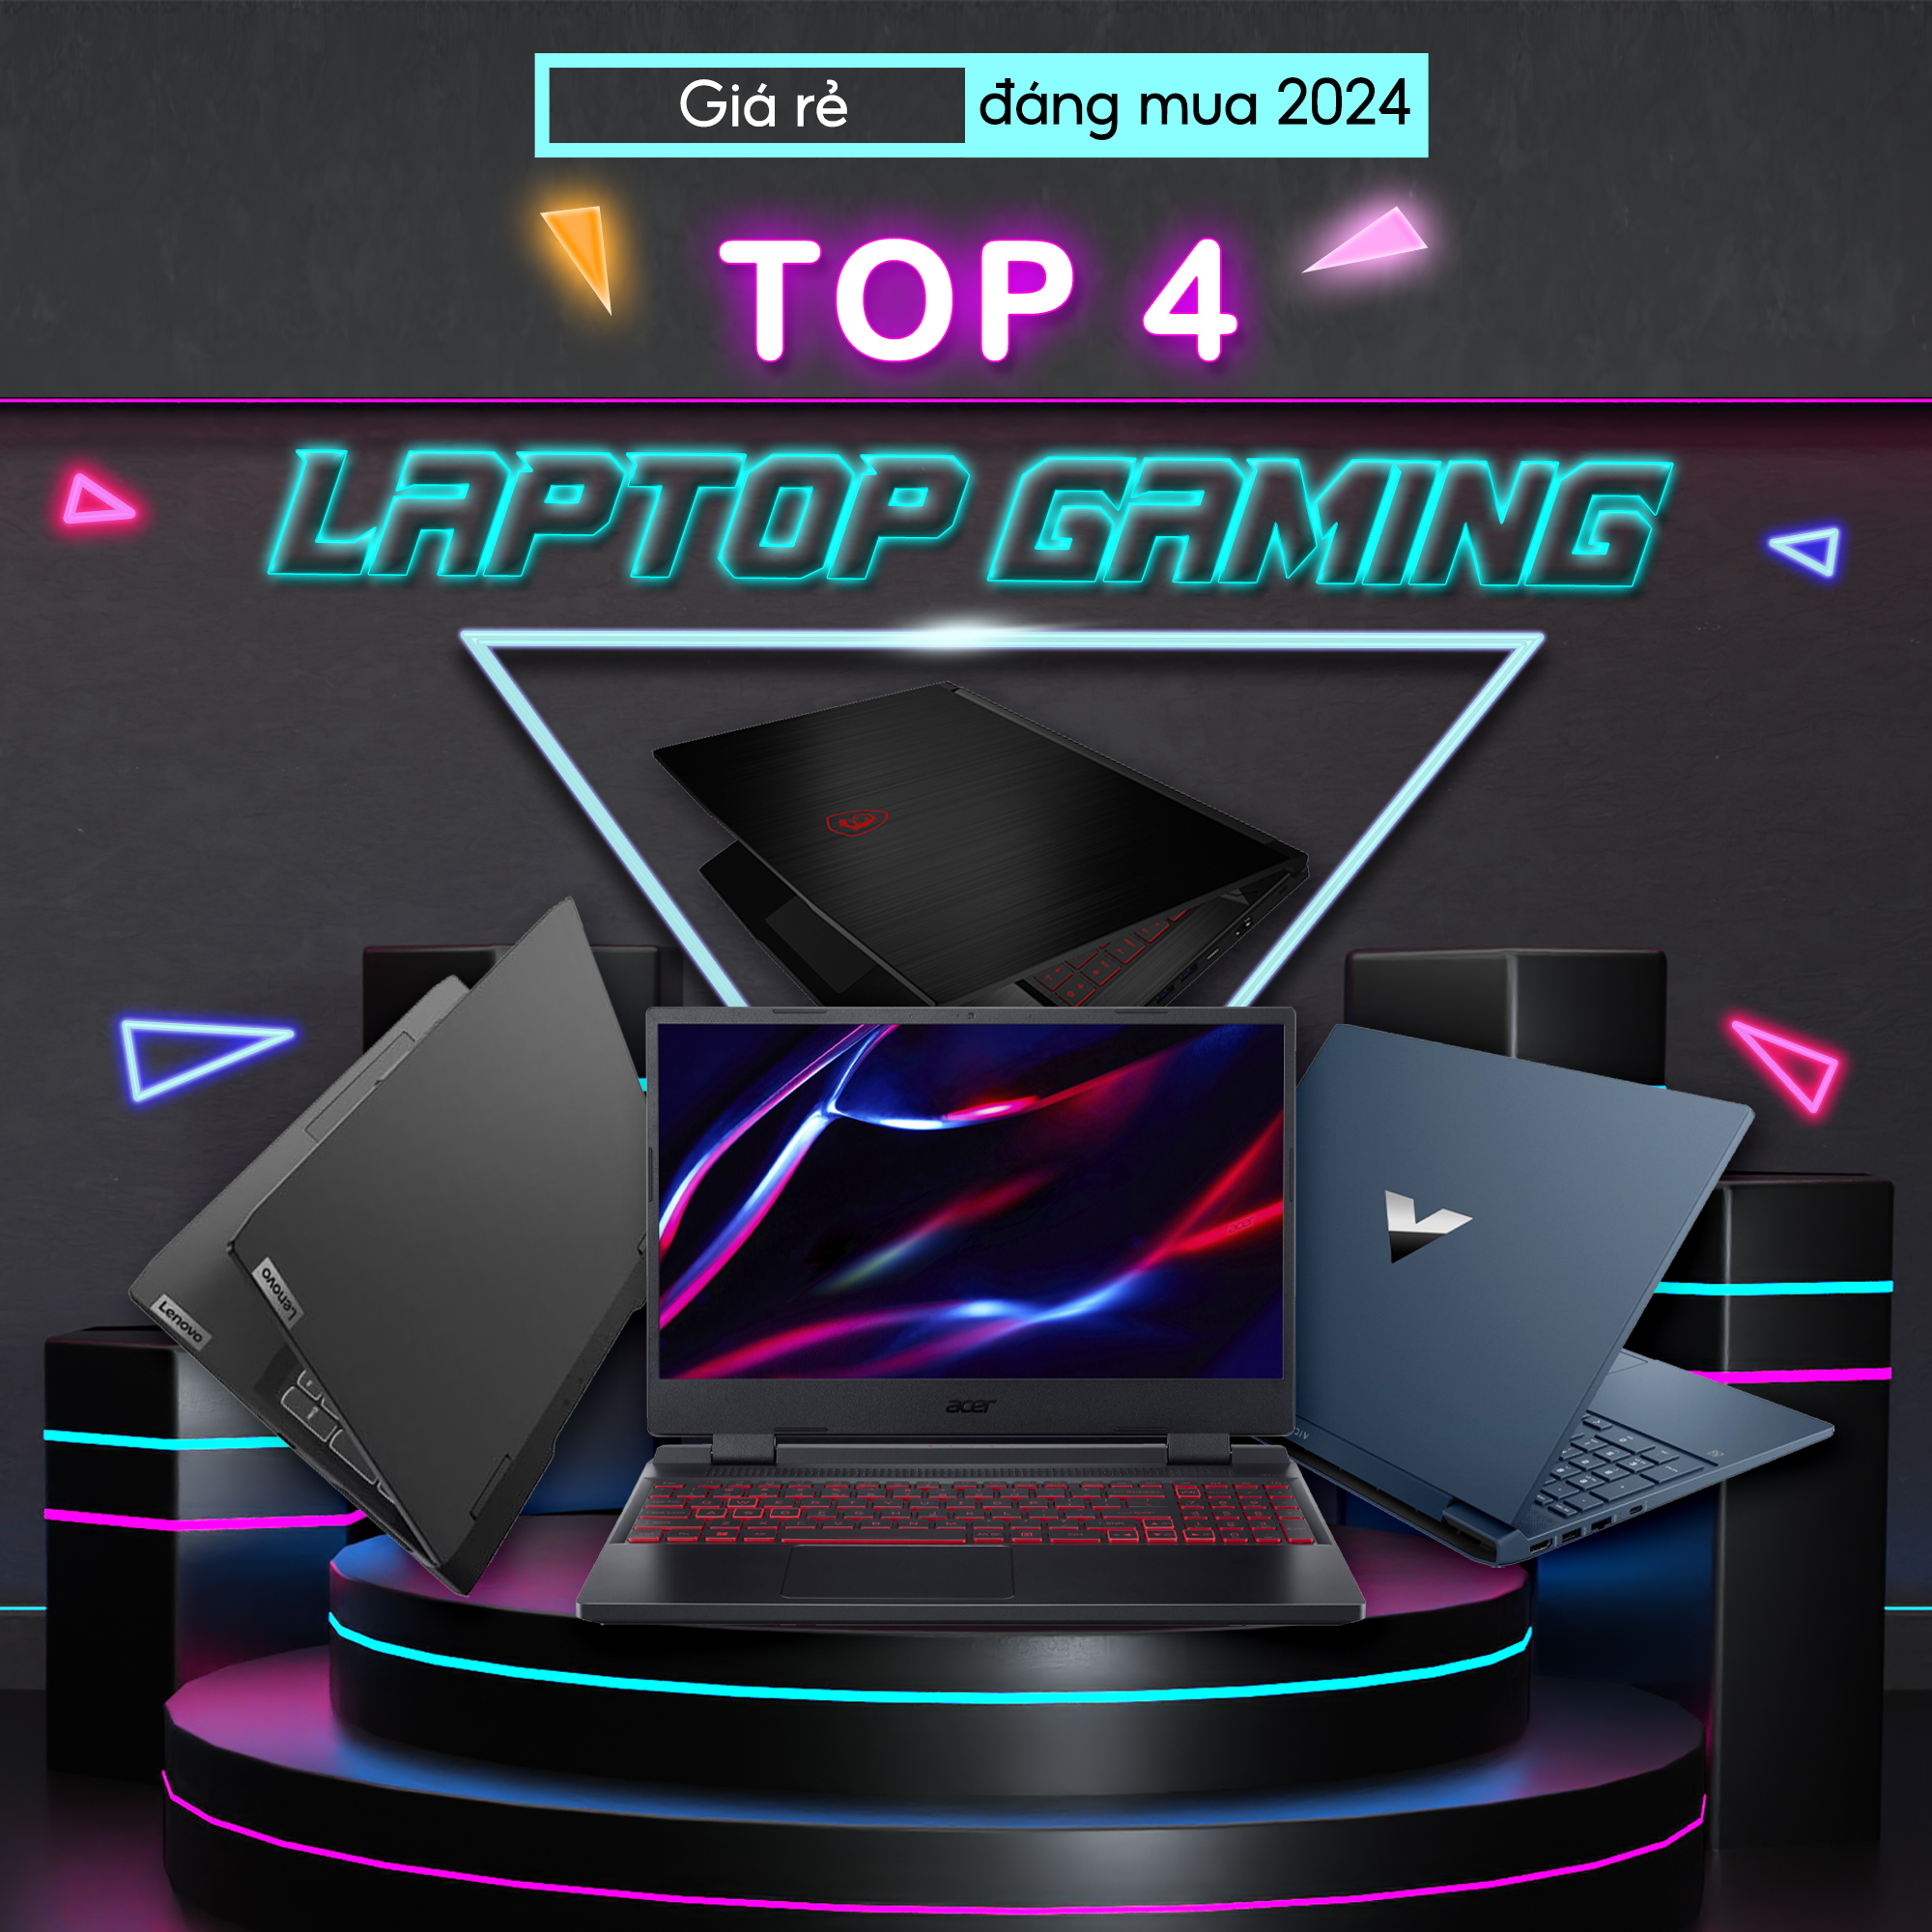 Top 04 Laptop Gaming Giá Rẻ Đáng Mua 2024